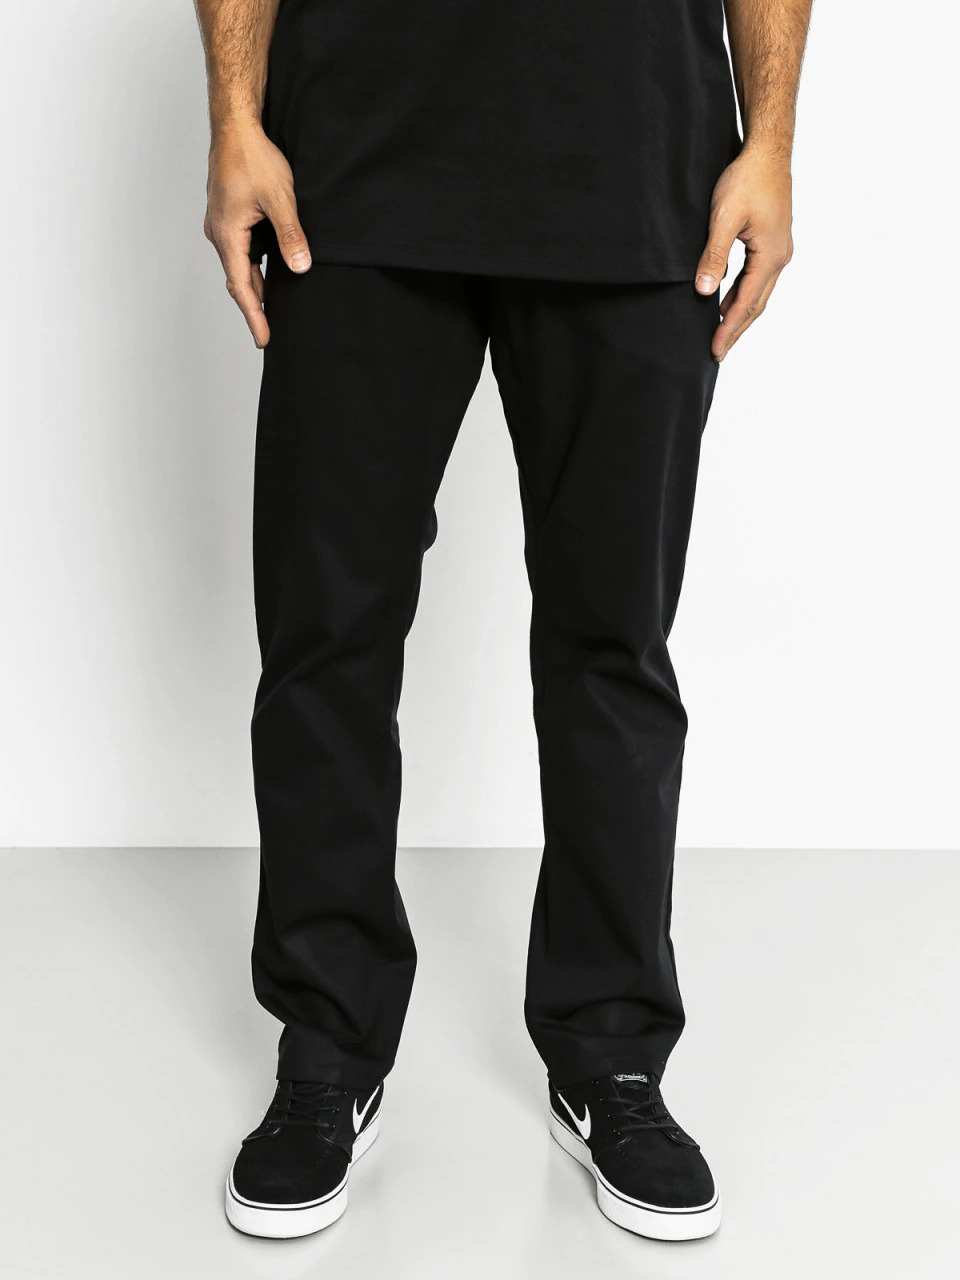 Nike SB Pants Chino Flex Icon Black MH